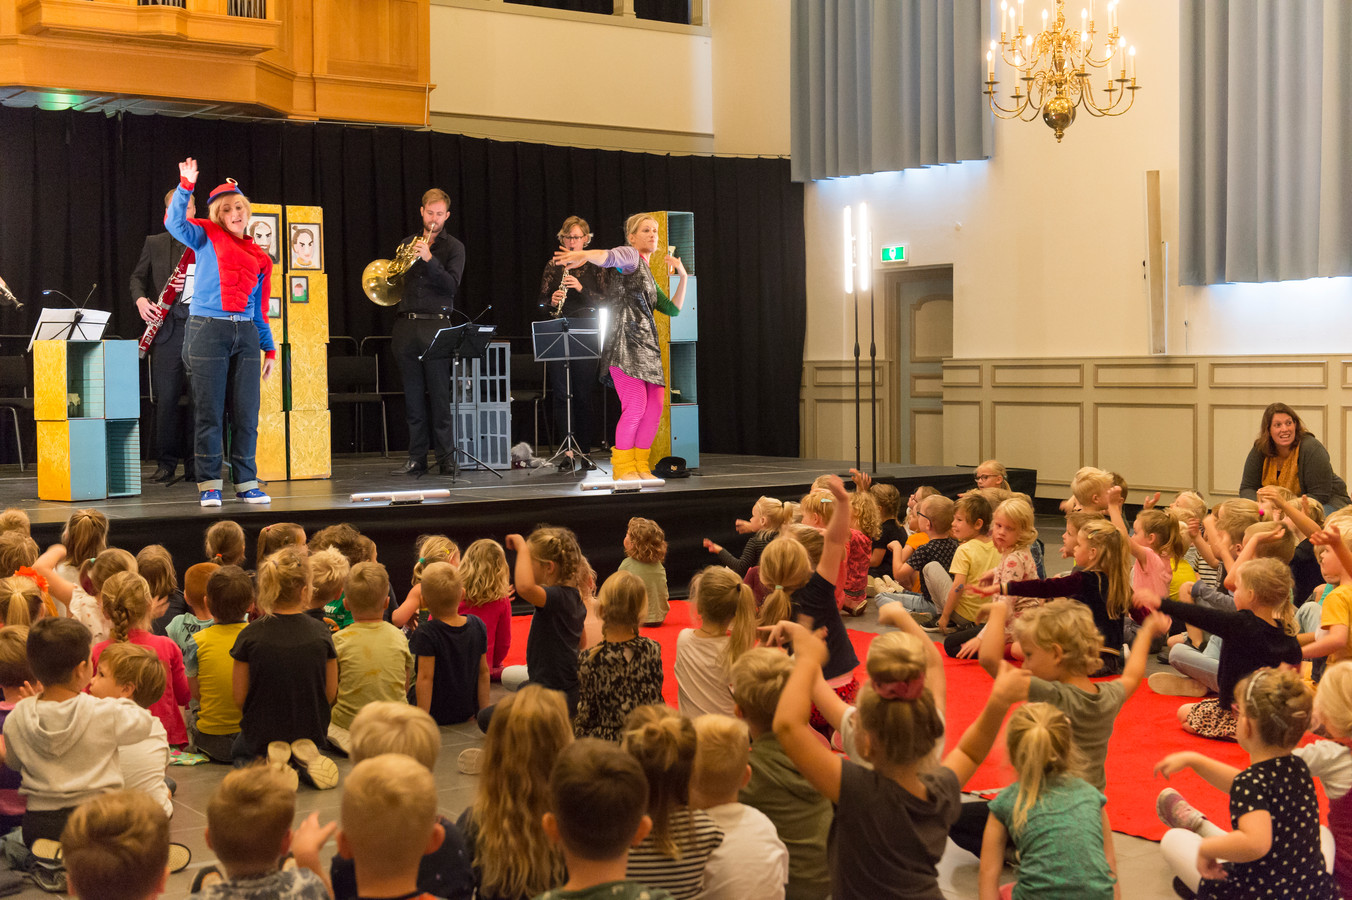 Tientallen bassischoolleerlingen uit Lochem genoten vandaag met volle teugen van de voorstelling ‘Hans & Grietje’ in het kader van Retourtje Cultuur Gelderland.